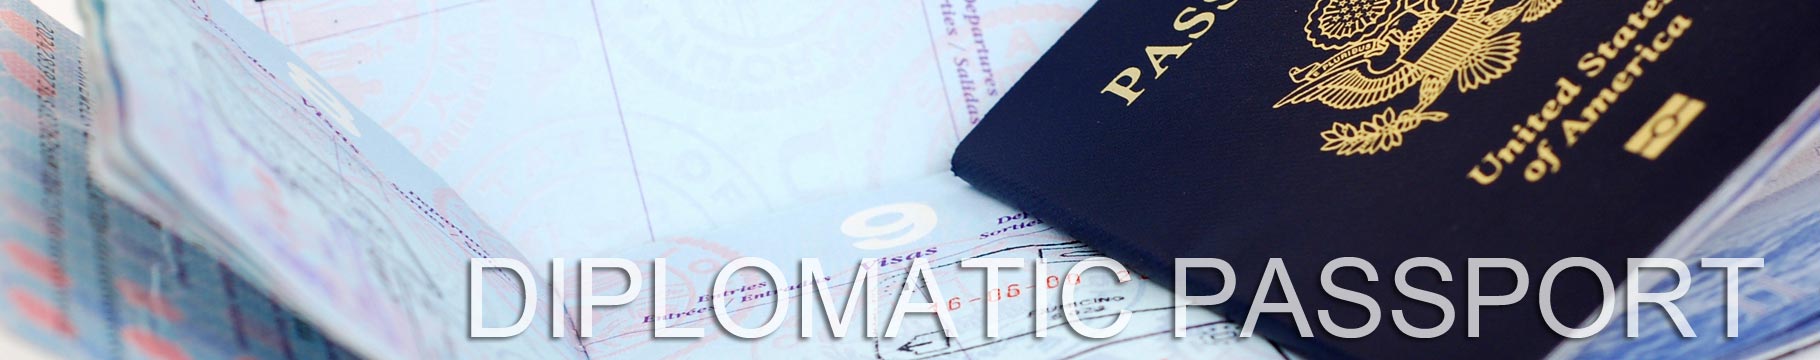 pasaporte diplomatico